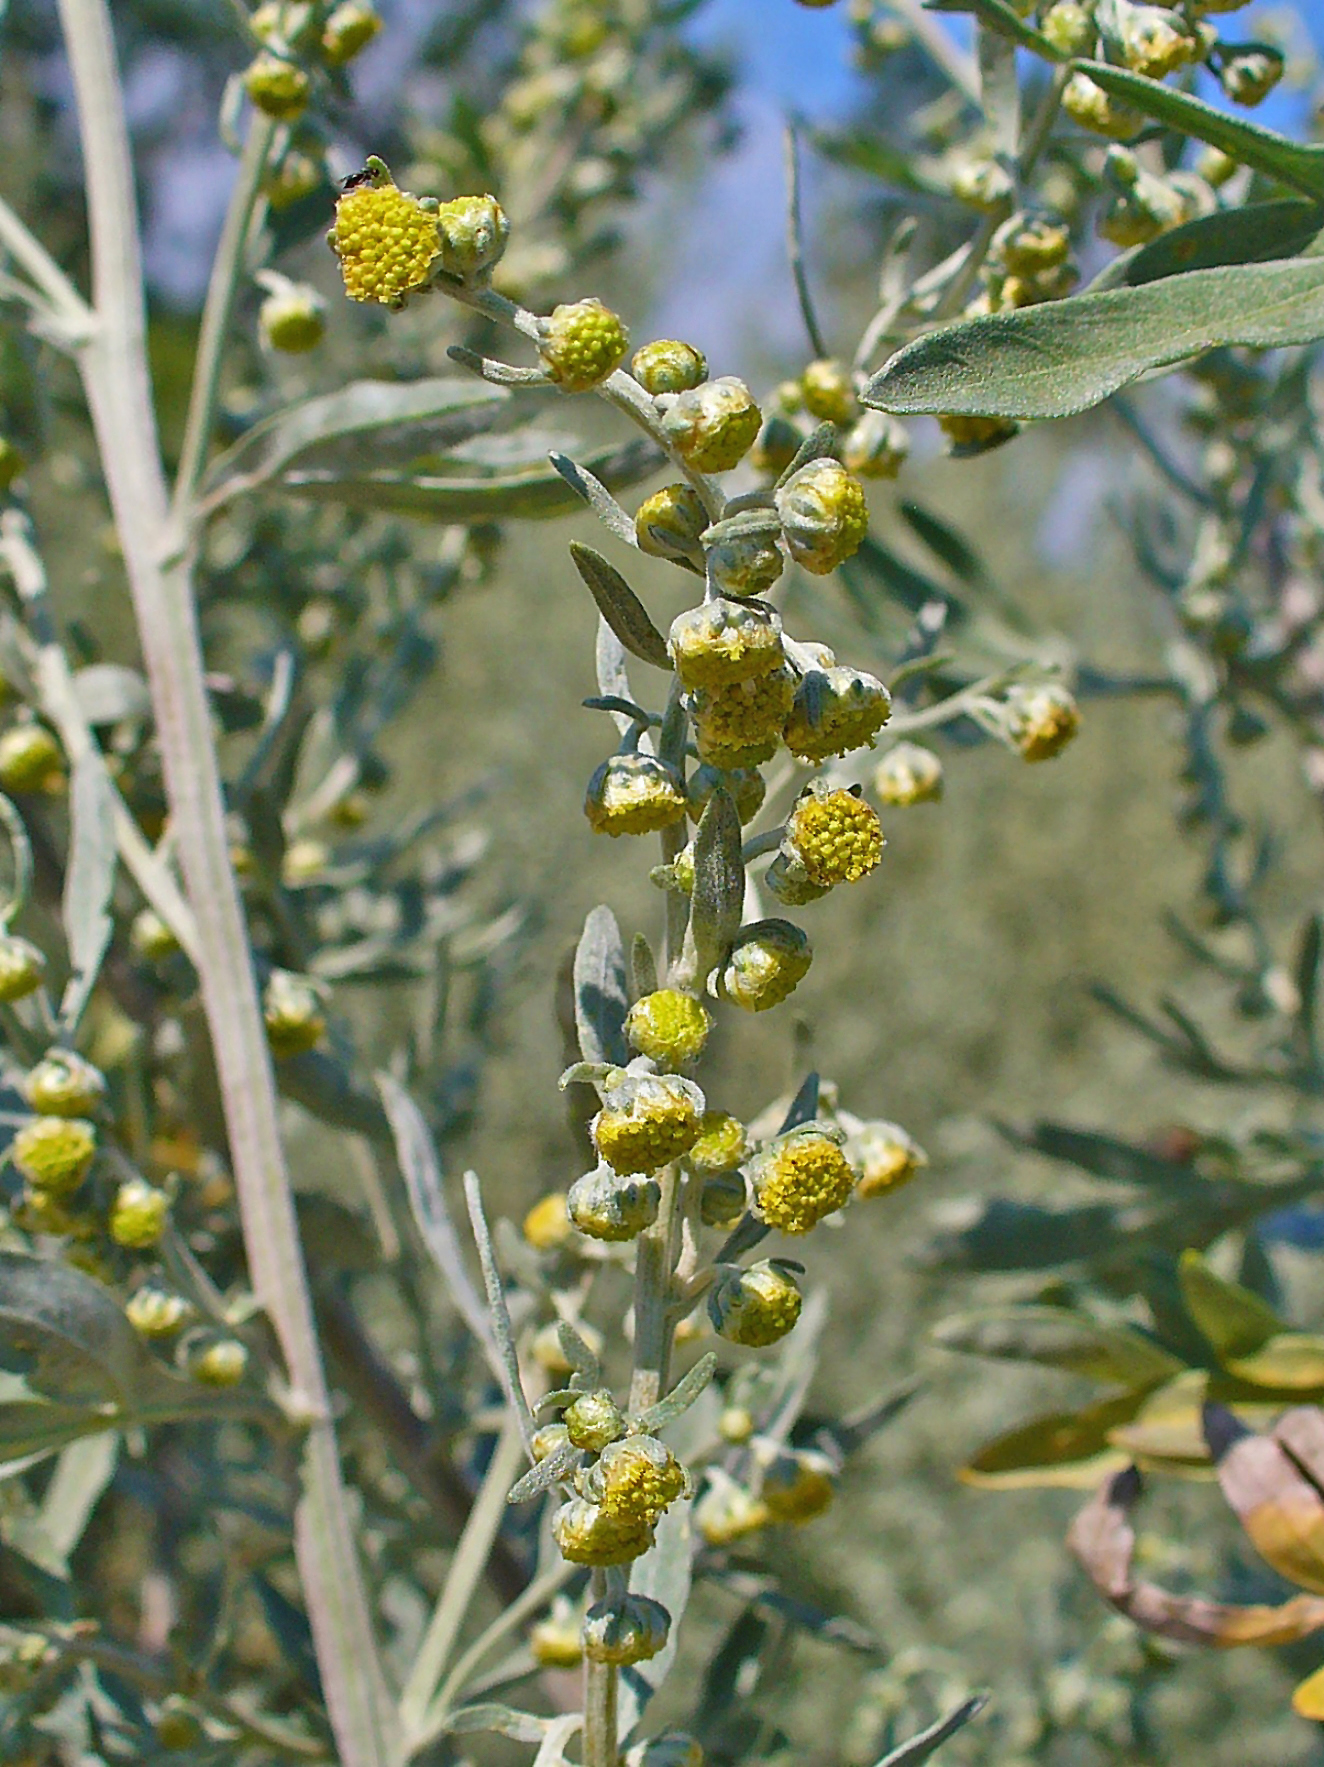 Artemisia absinthium (wormwood)